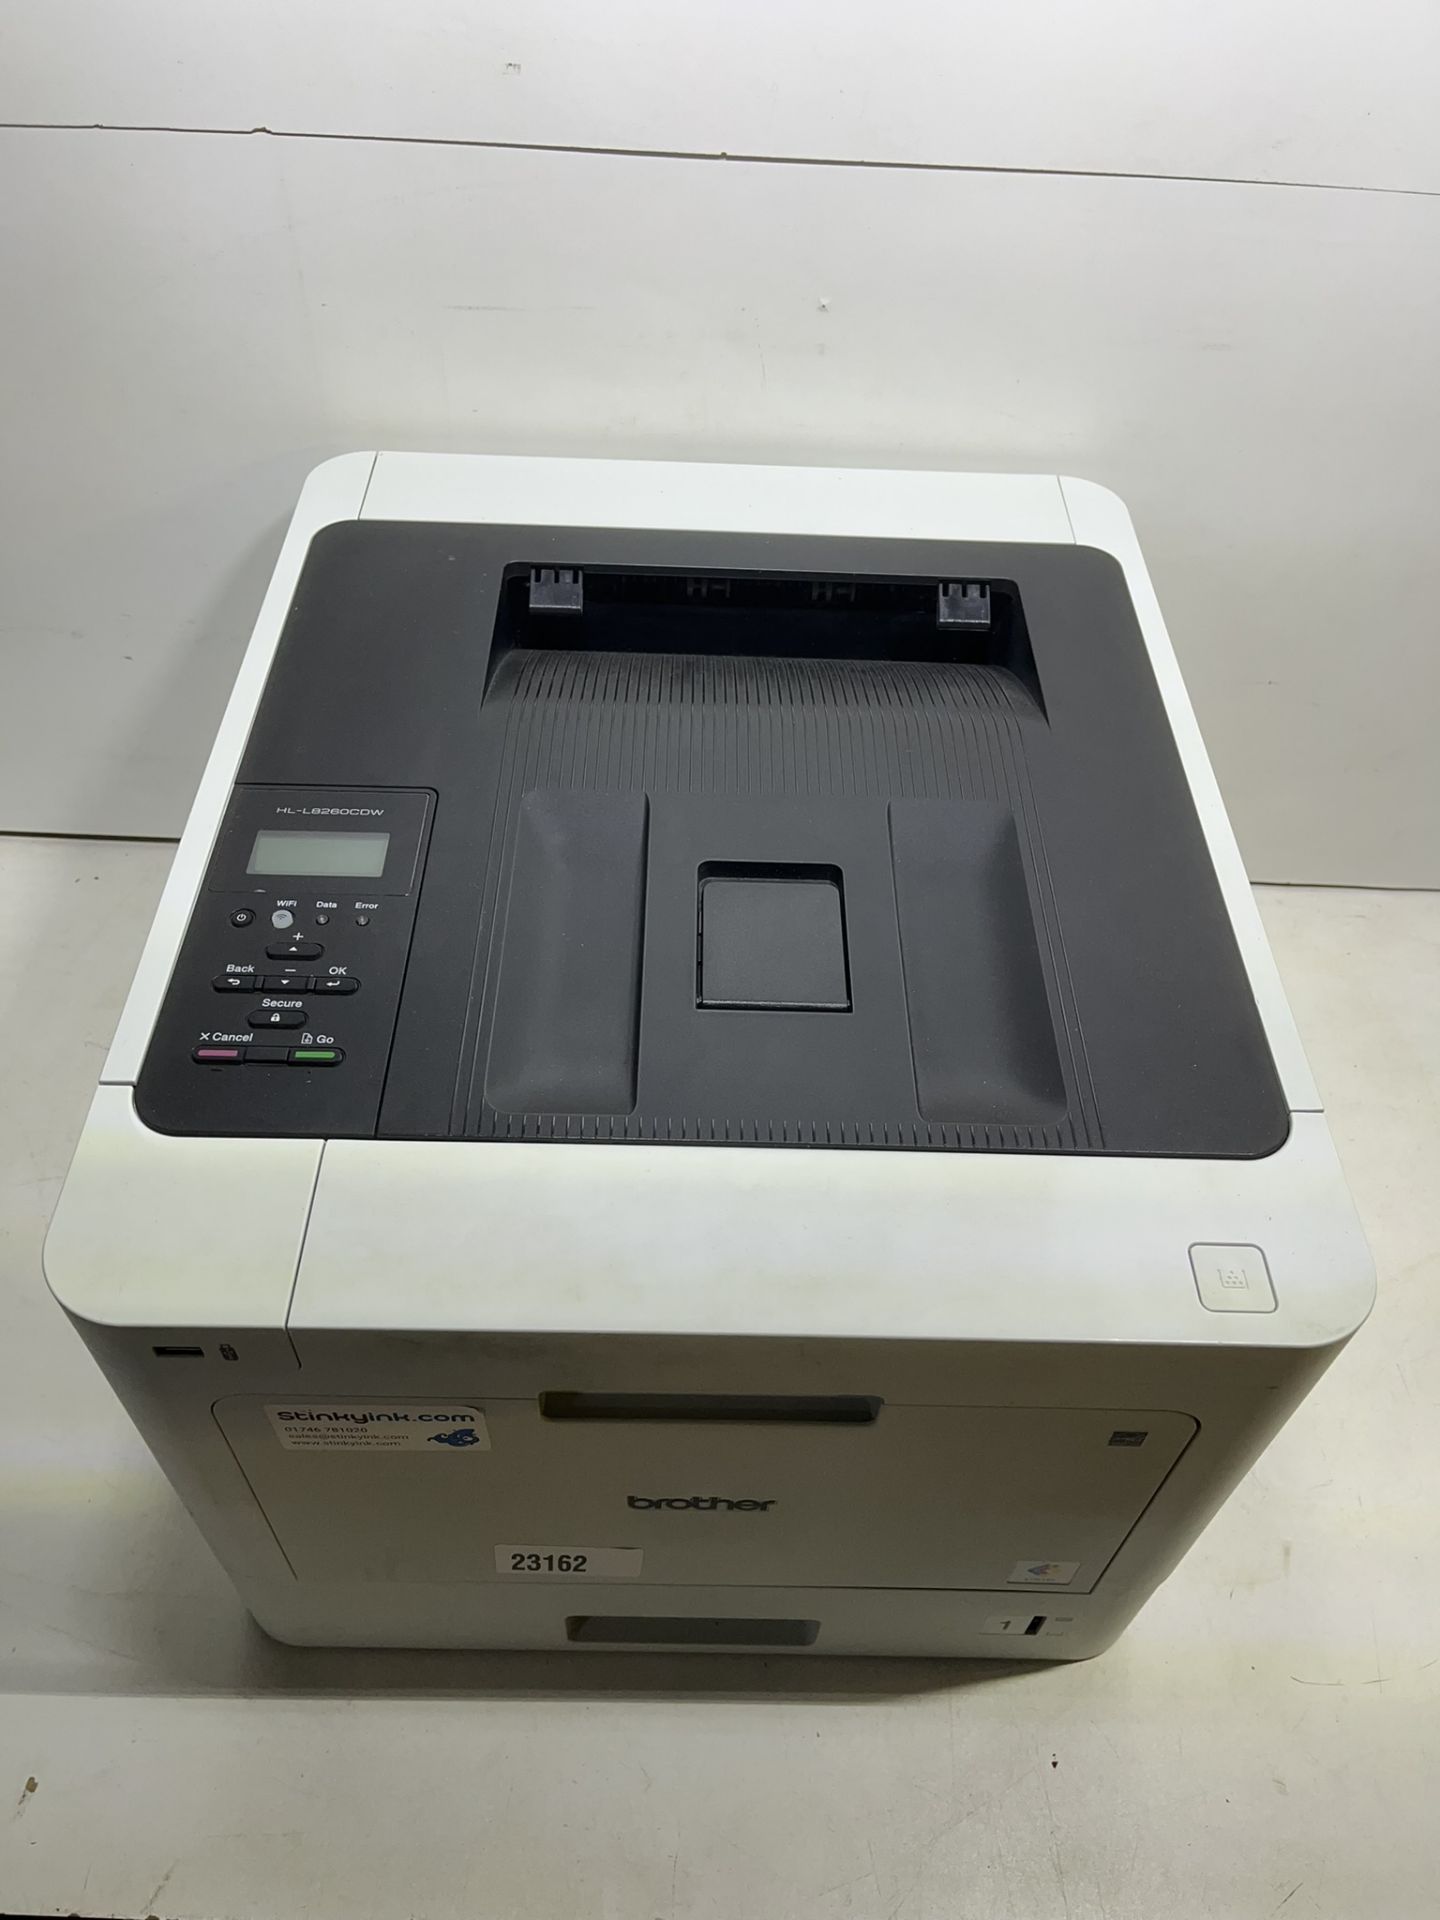 Brother HL-L8260CDW Colour Laser Printer - Image 2 of 5